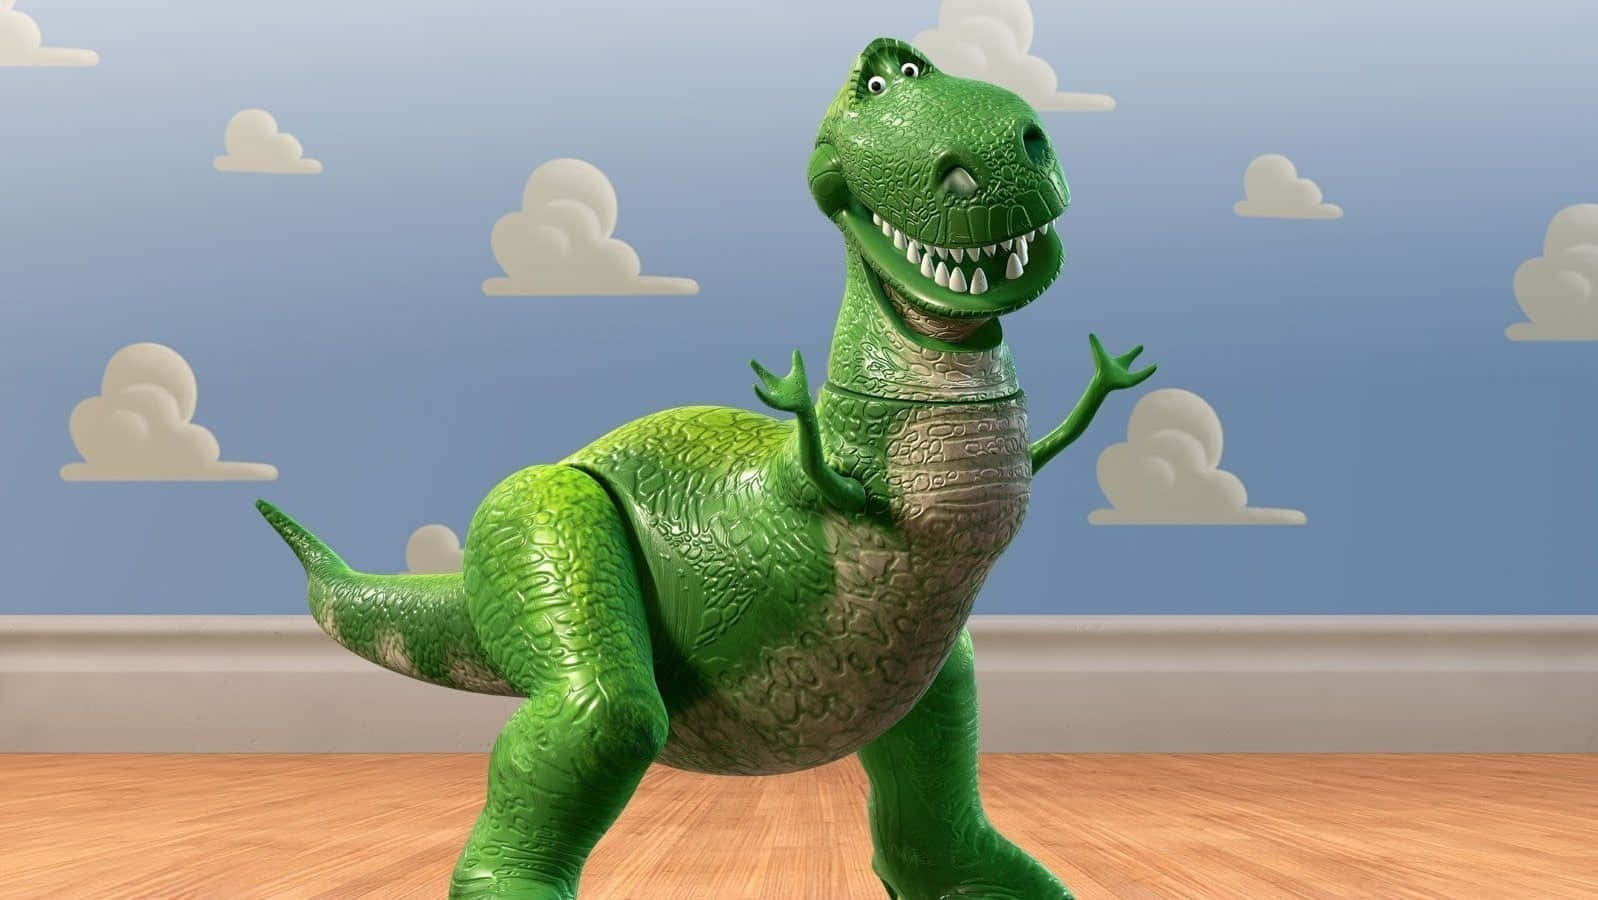 Bilddes Dinosauriers Rex Aus Toy Story